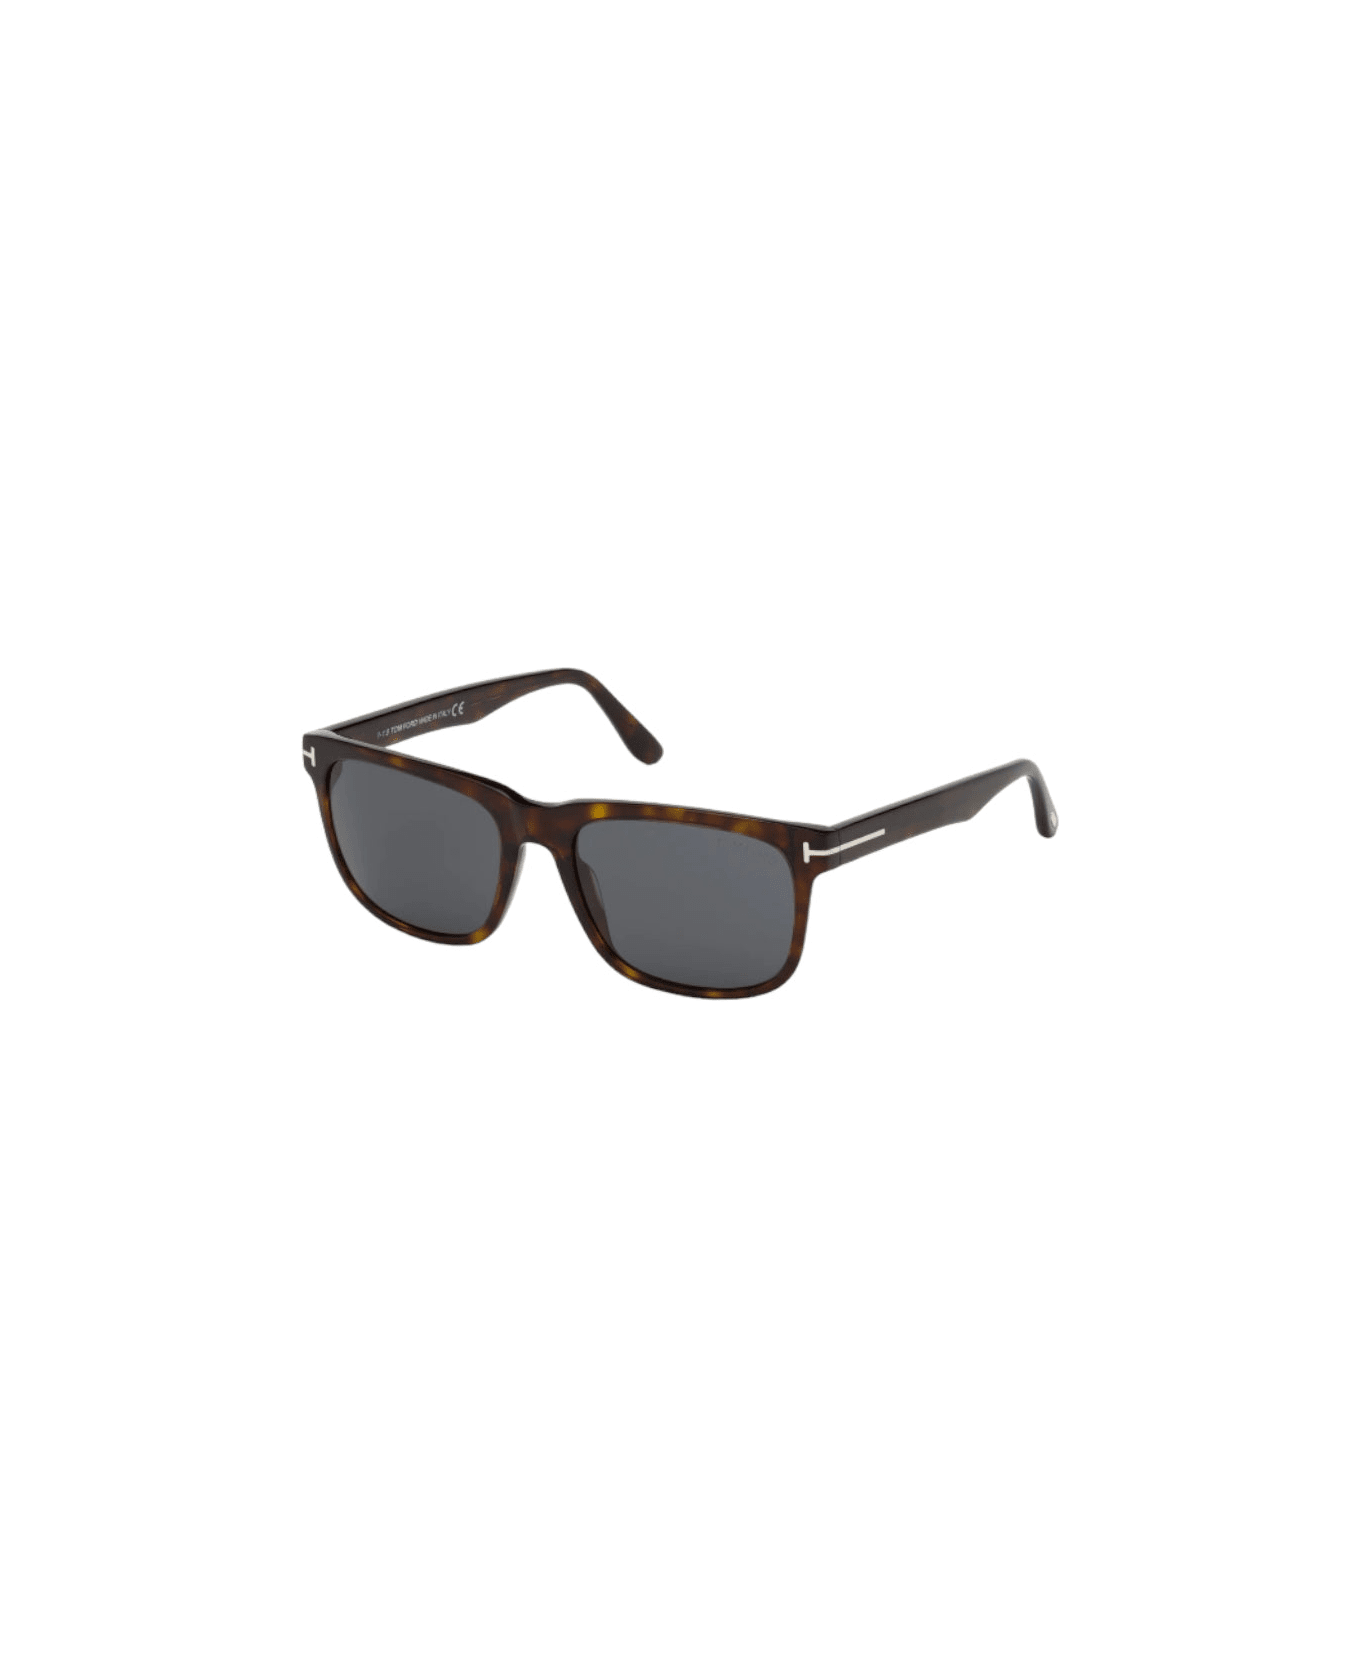 Tom Ford Eyewear Stephenson - Ft 775 Sunglasses サングラス